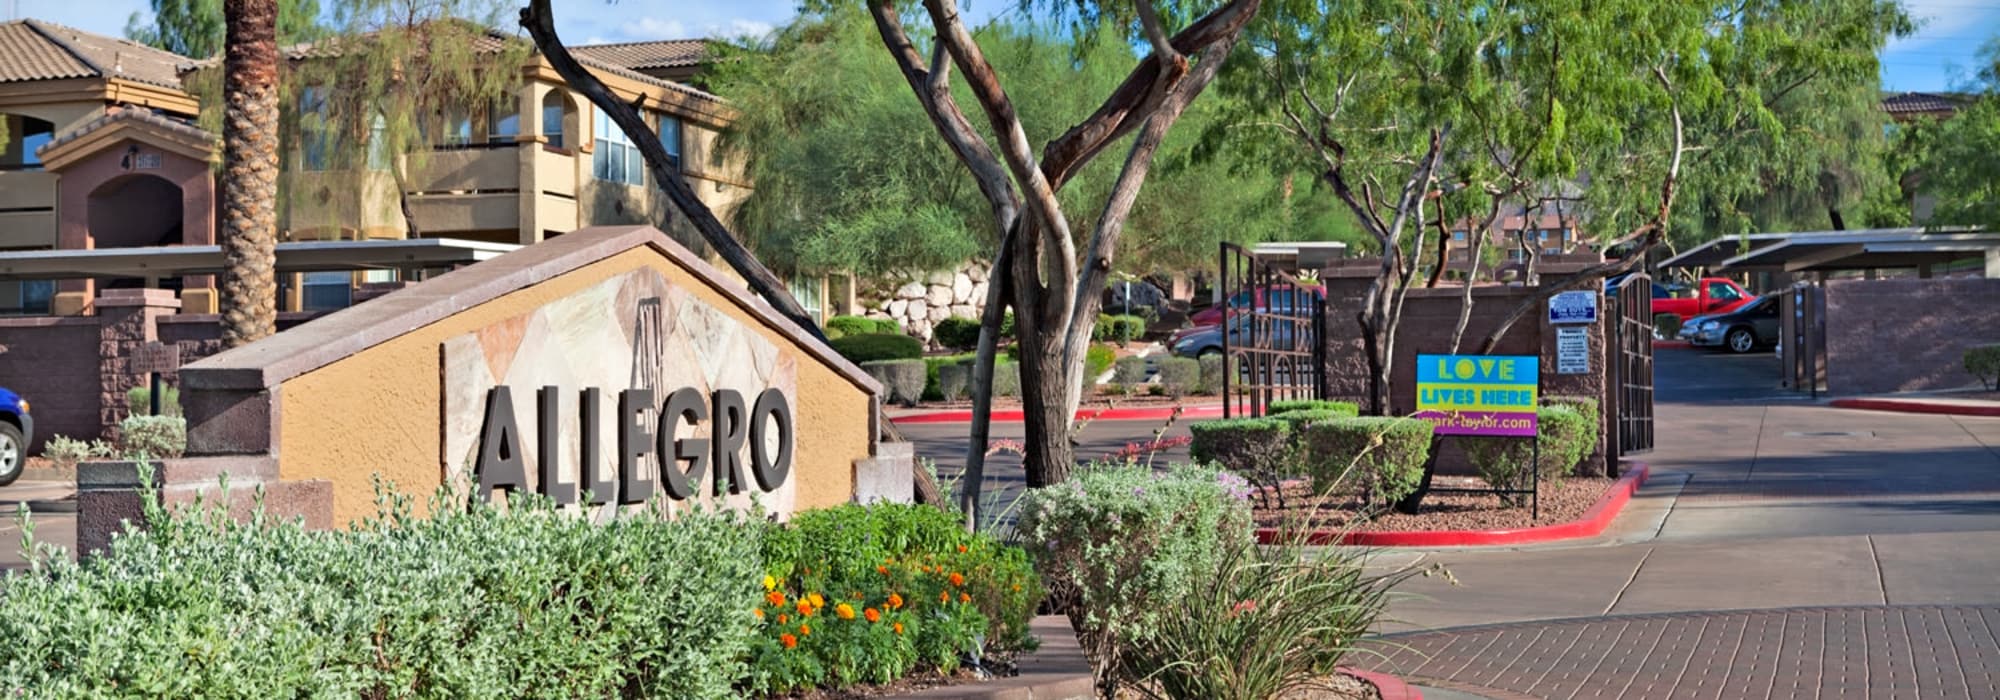 Entrance to Allegro at La Entrada in Henderson, Nevada